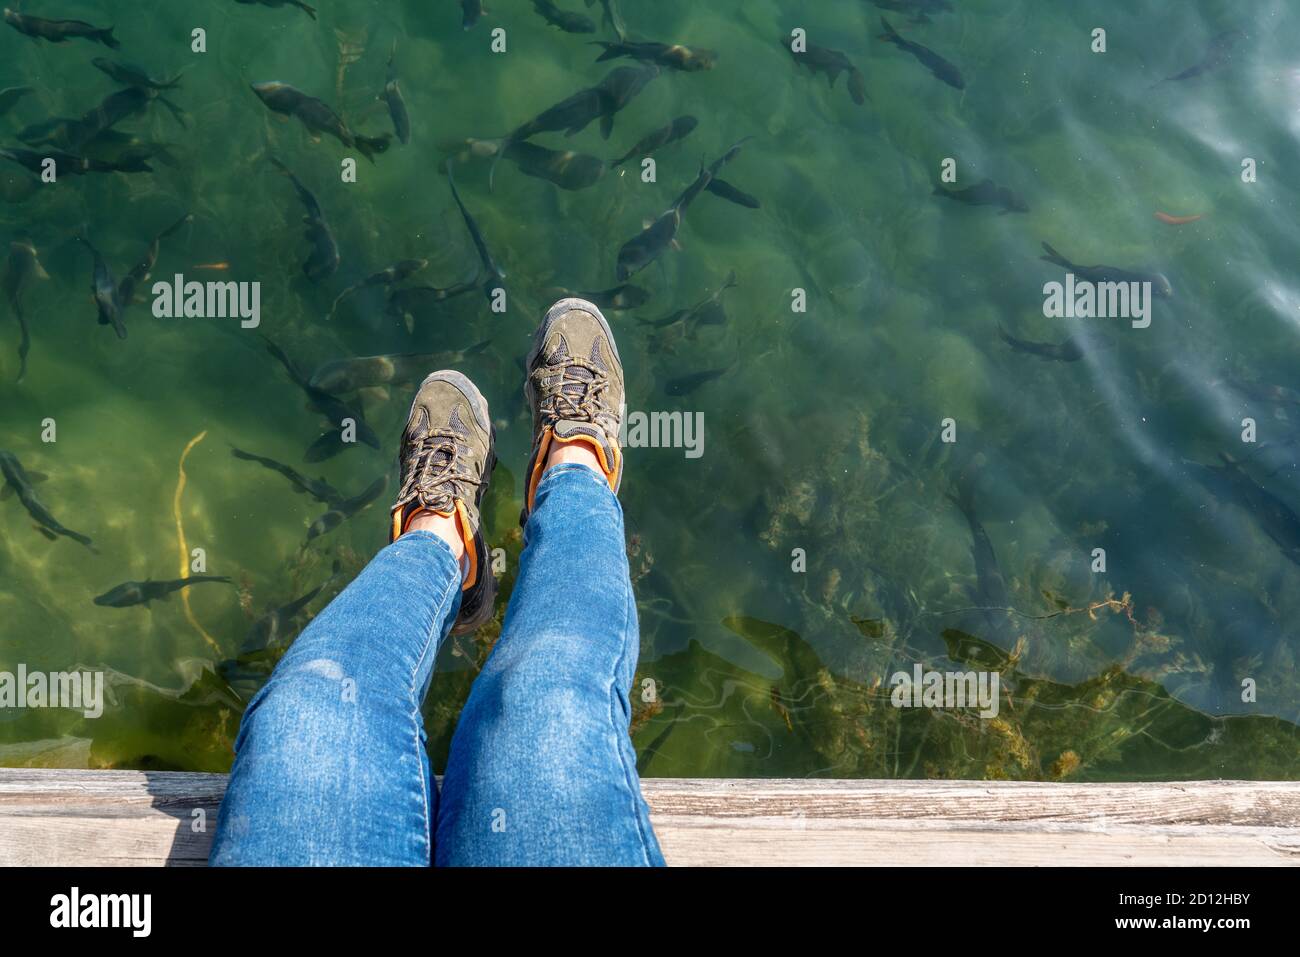 Seduto sul molo e guardando un gregge di trote in un lago. Foto di alta qualità Foto Stock